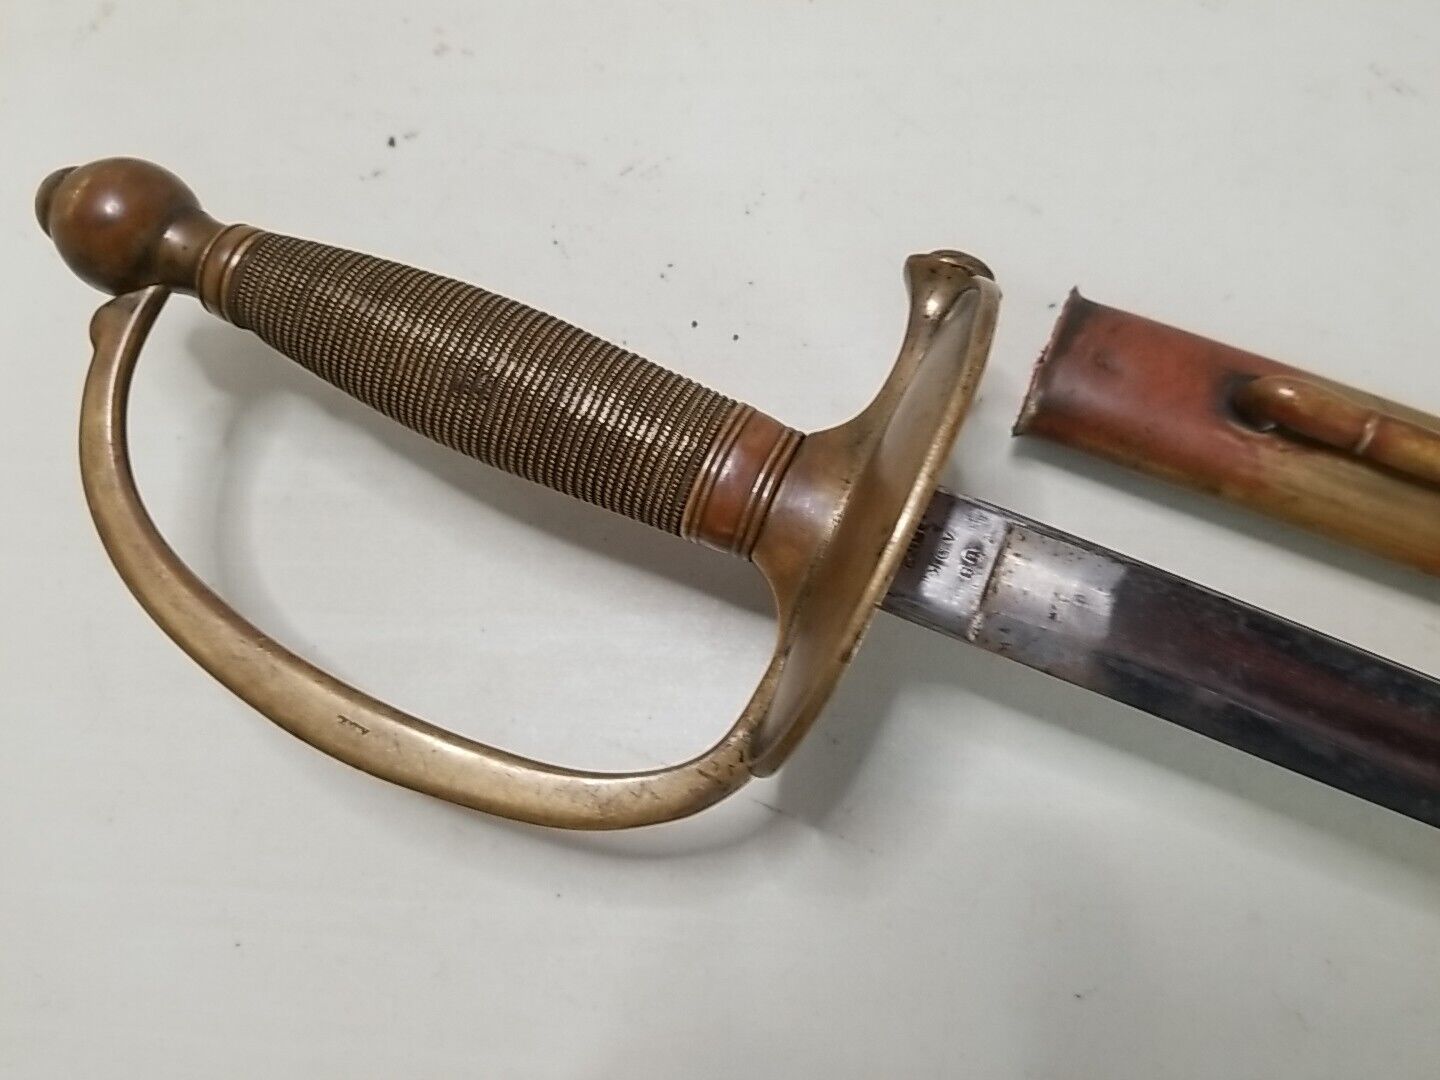 Ames Civil War Model 1840 NCO Sword w/Scabbard - 1862